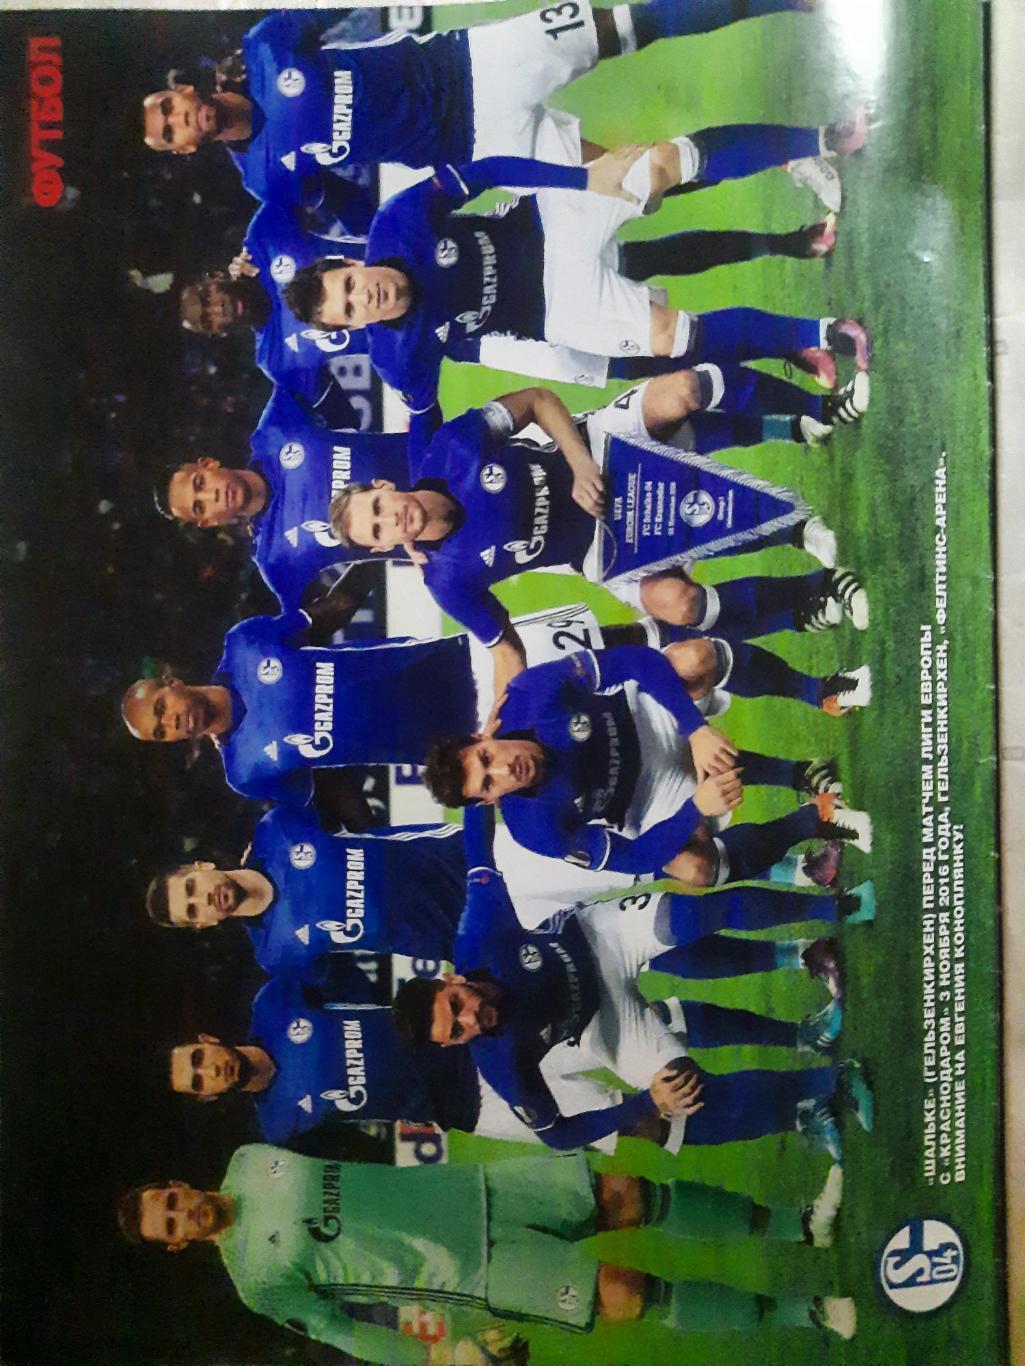 еженедельник Футбол #87 2016, постеры: Шальке-04, Андерлехт... 1